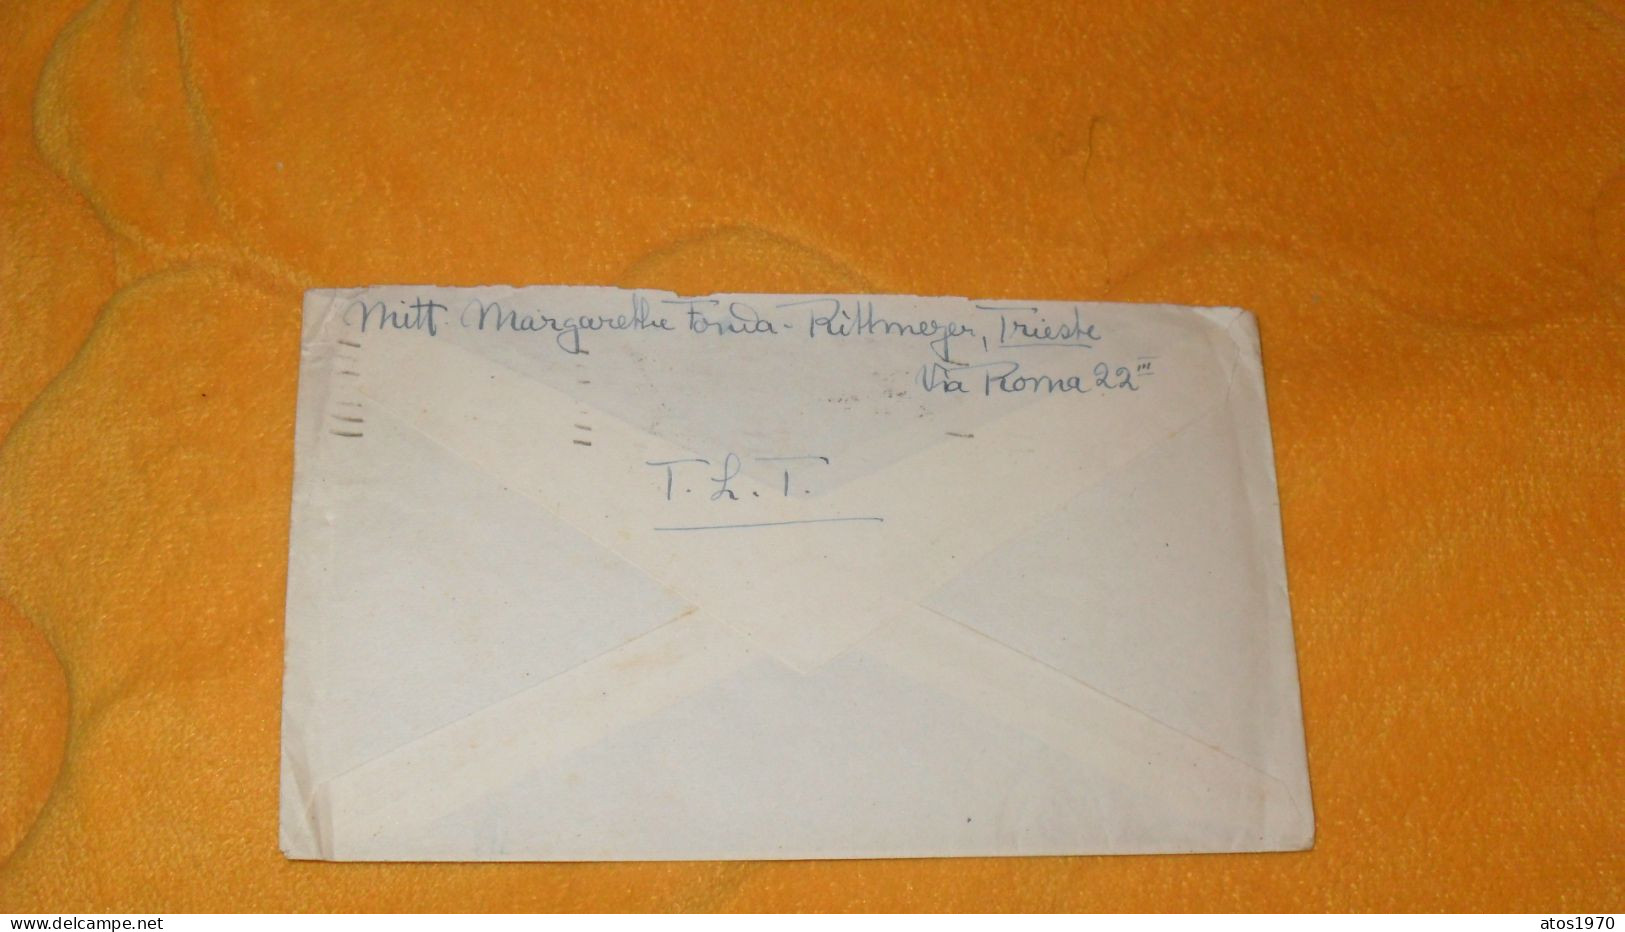 ENVELOPPE ANCIENNE DE 1947../ GERMANIA - BRITISCHE ZONE..CACHETS TRIESTE ARRIVIE PARTENZE + TIMBRES X2 SURCHARGE AMB FTT - Marcophilia